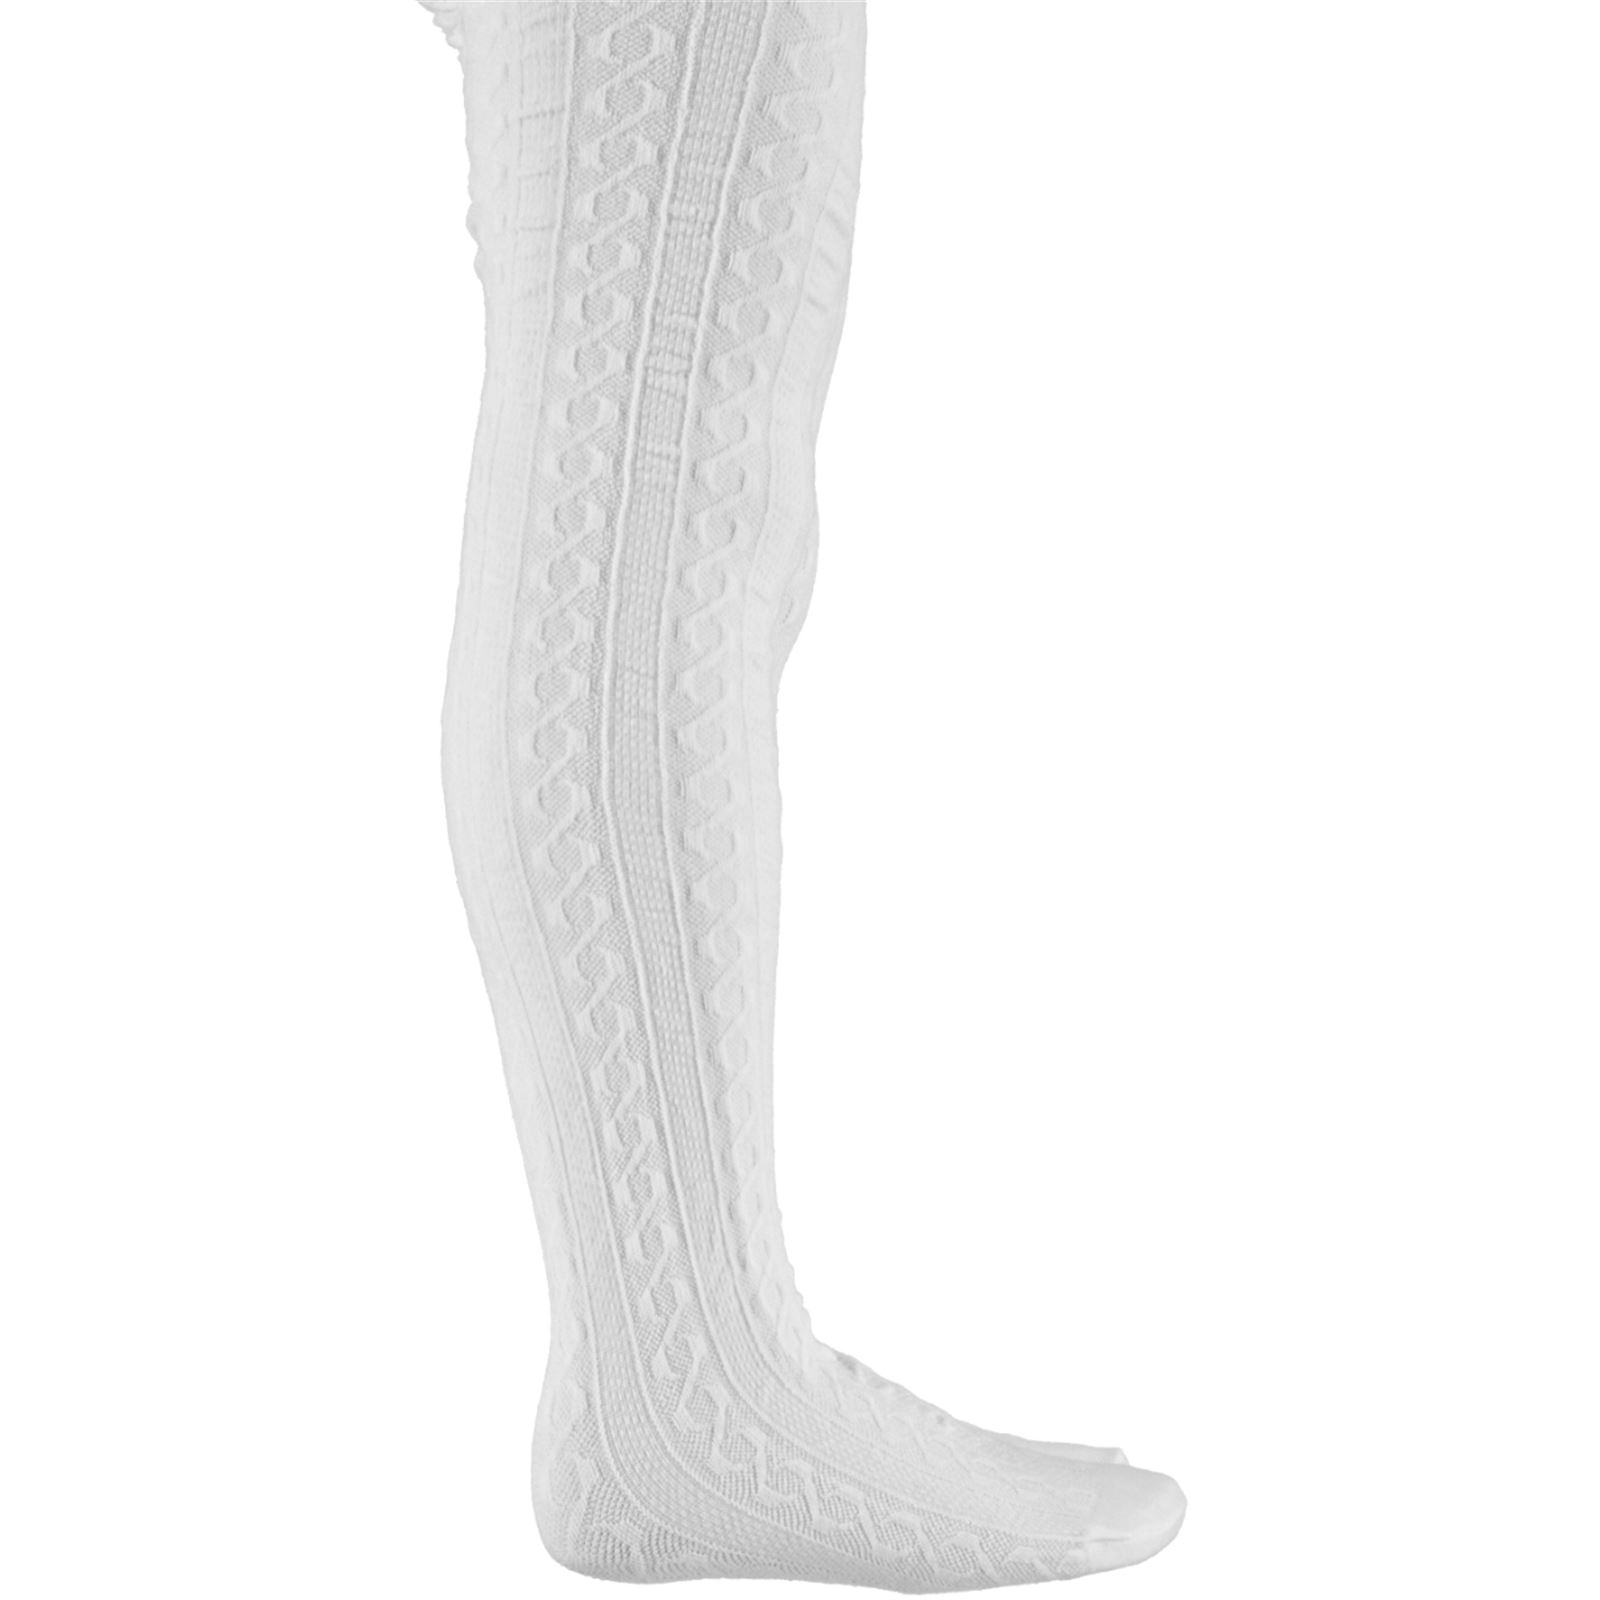 Bella Calze Triko Külotlu Çorap 2-14 Yaş Beyaz